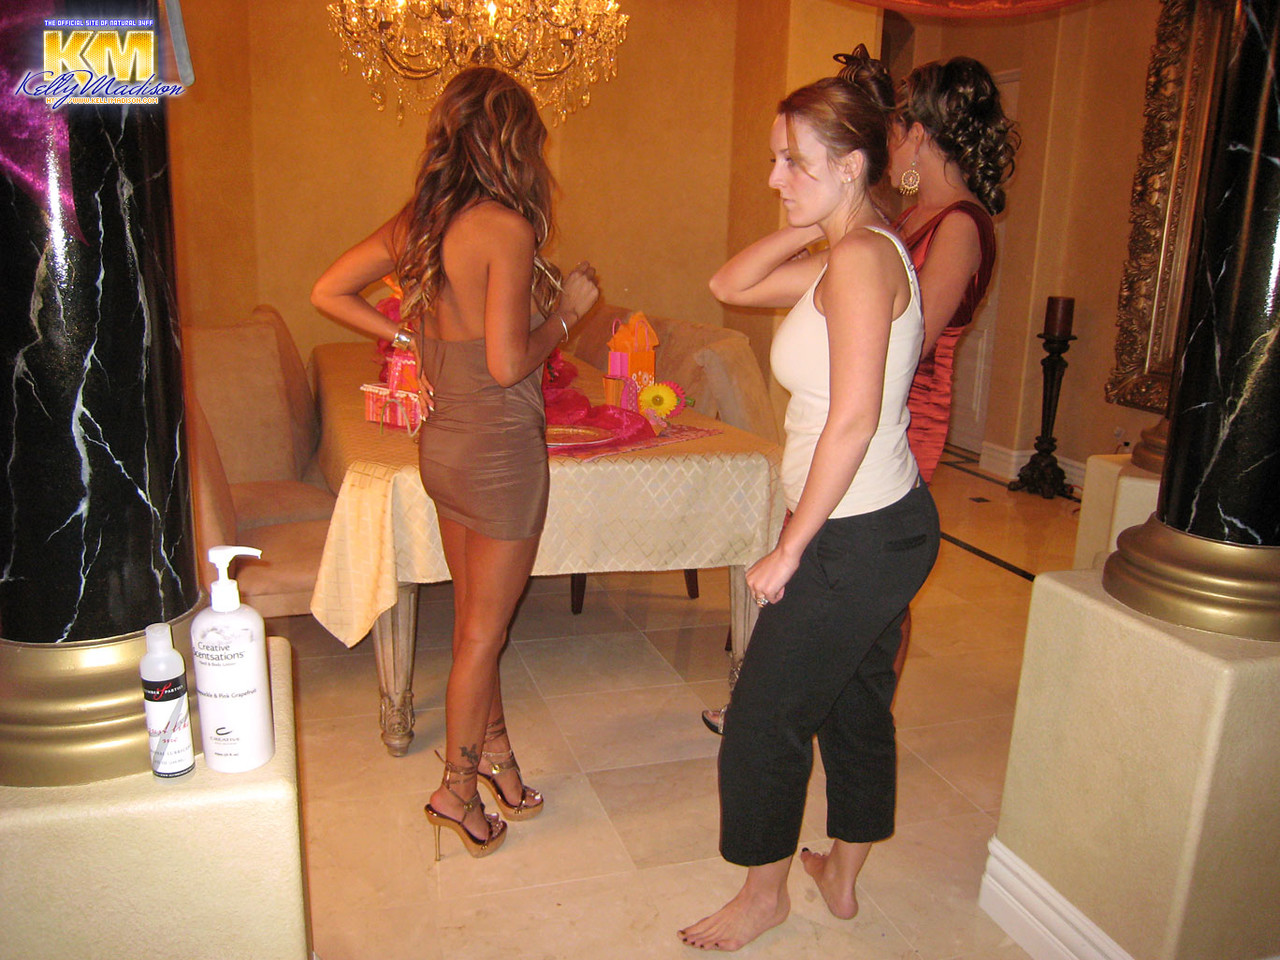 Beautiful busty pornstars Demi Delia &Kelly Madison show their big tits BTS ポルノ写真 #425300033 | Porn Fidelity Pics, Demi Delia, Kelly Madison, Ryan Madison, Party, モバイルポルノ